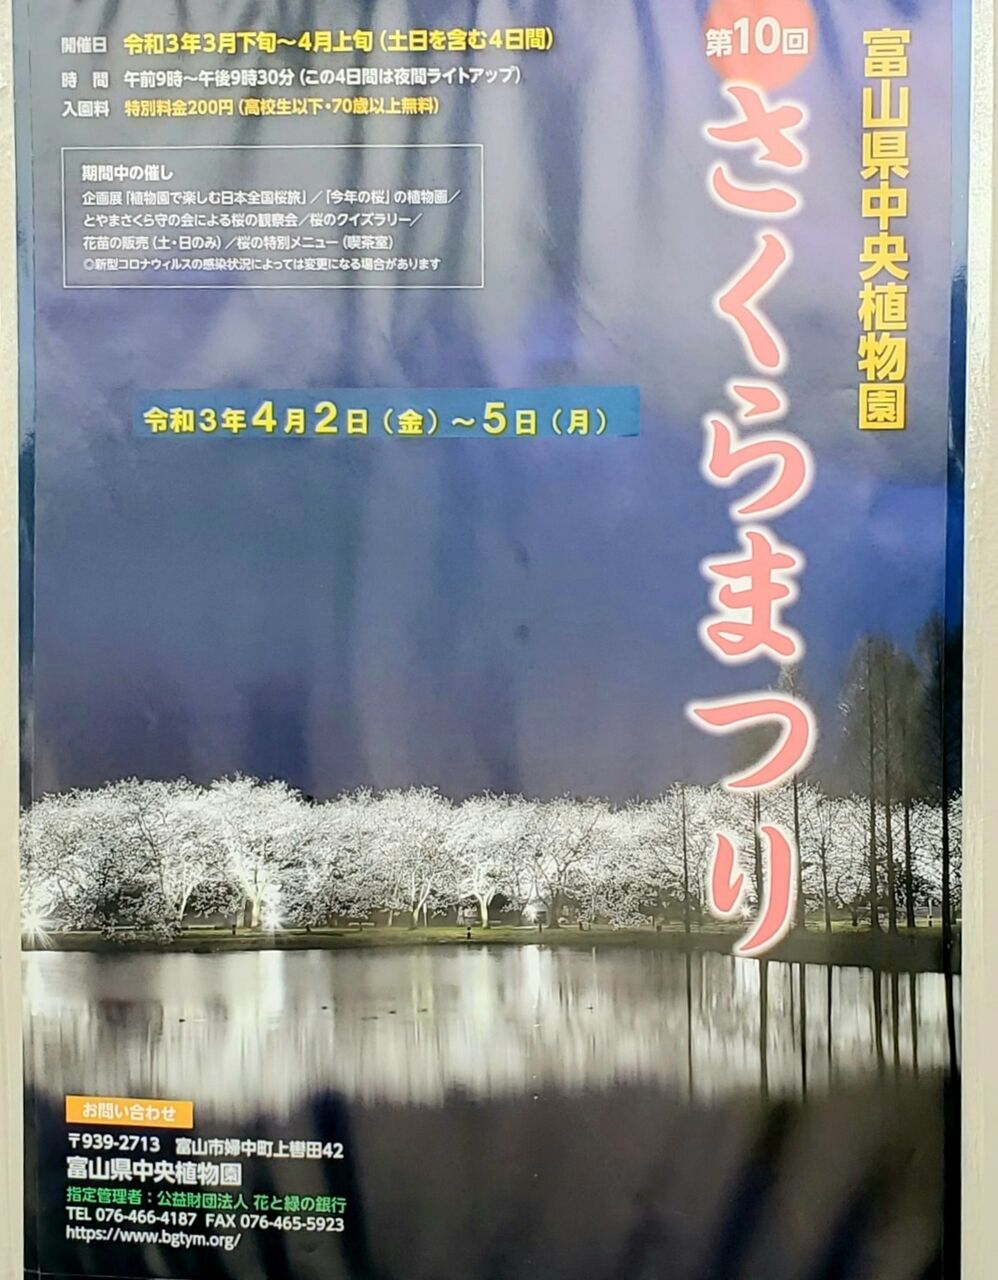 桜のトンネルをライトアップ 富山県中央植物園 で 第10回さくらまつり 開催 4月2日 5日 富山デイズ 富山県富山市の地域情報サイト